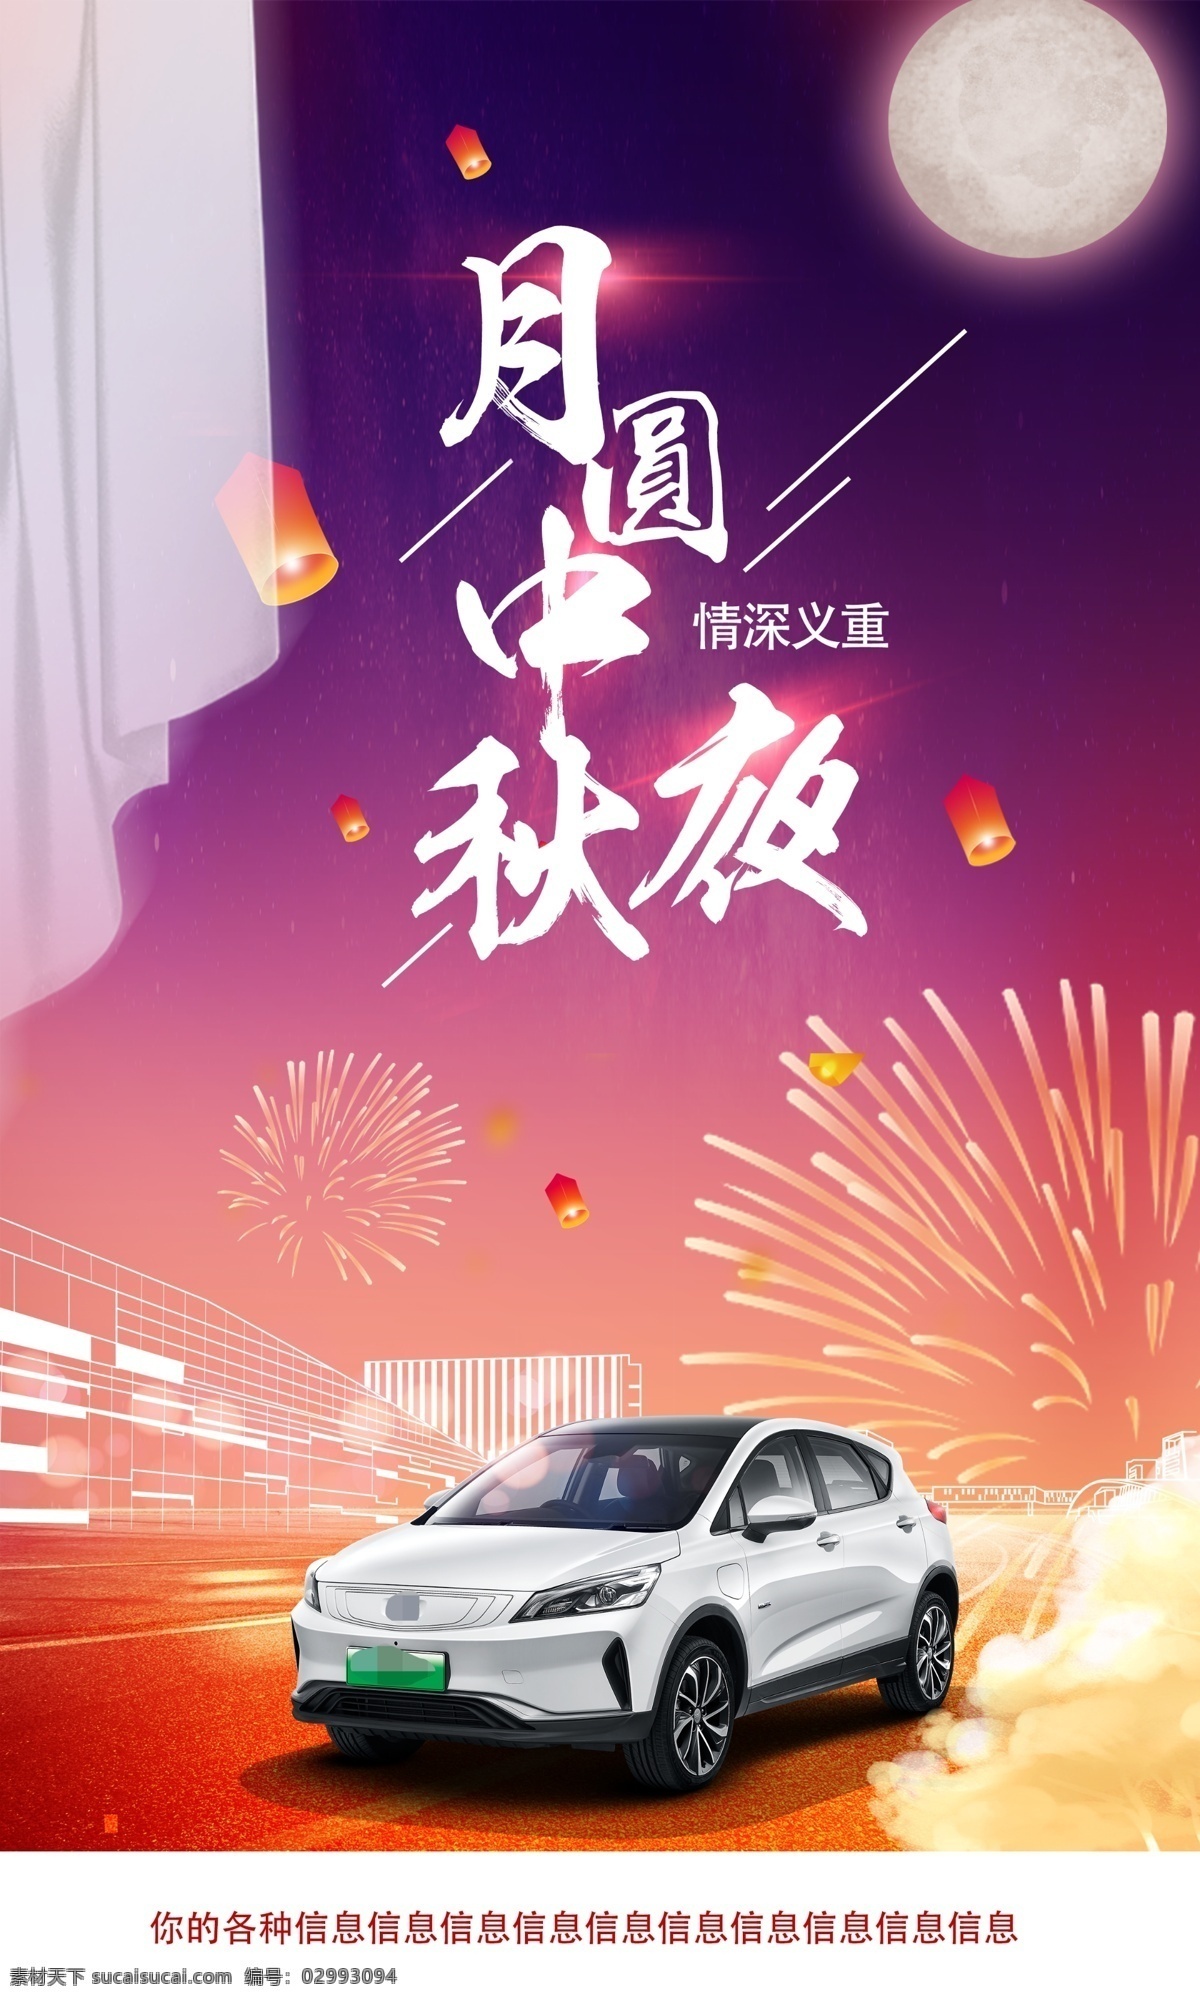 中秋节 活动 海报 烟花 汽车海报 背景板 宣传 节日促销